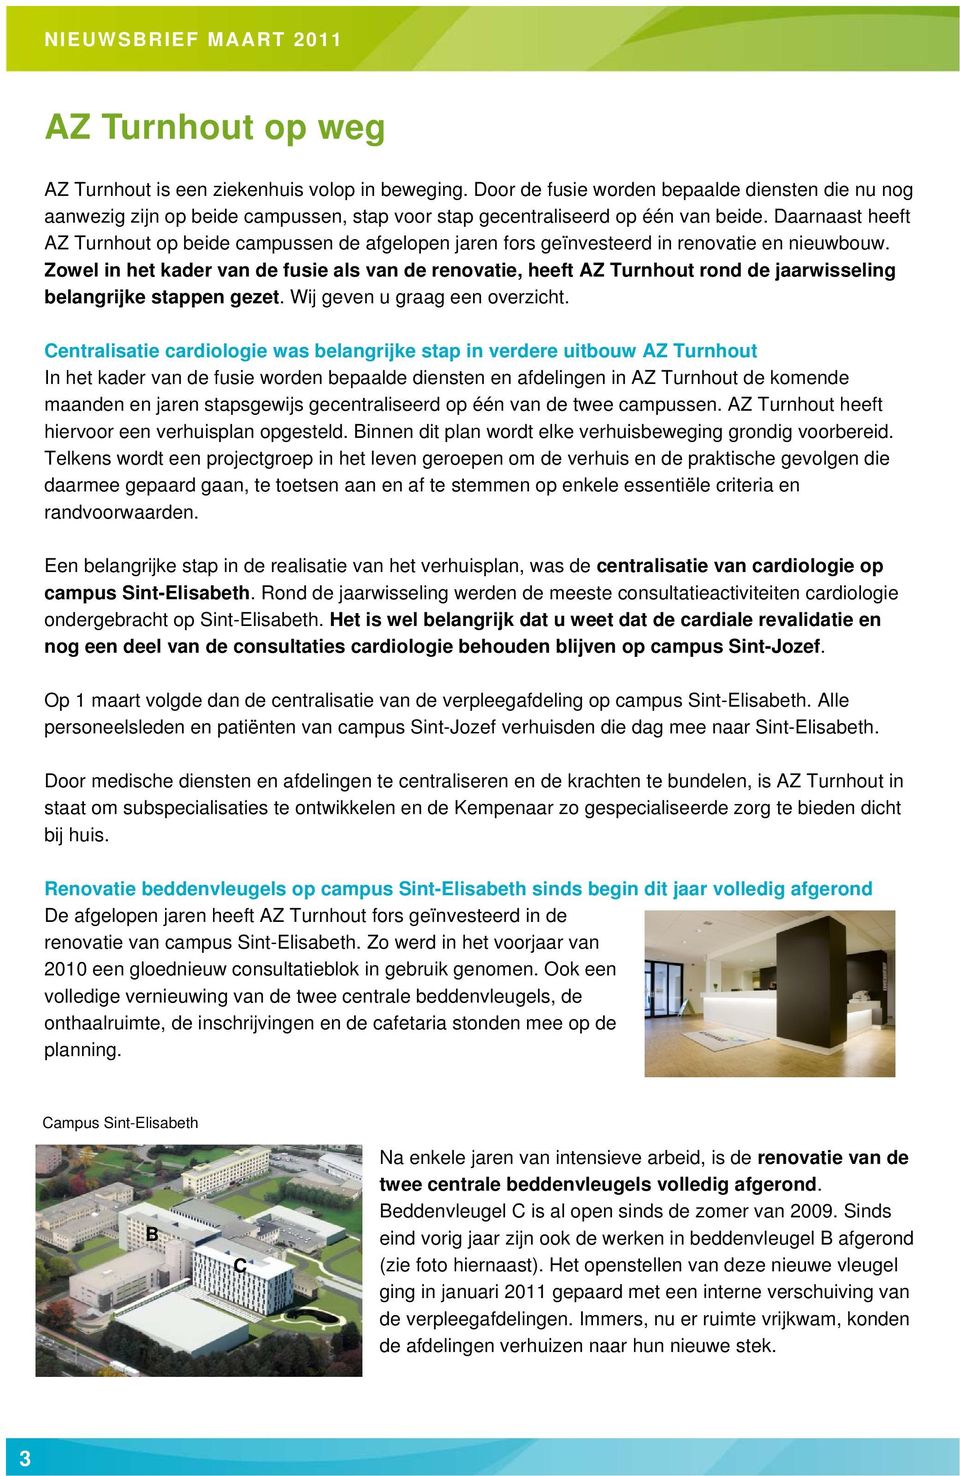 Zowel in het kader van de fusie als van de renovatie, heeft AZ Turnhout rond de jaarwisseling belangrijke stappen gezet. Wij geven u graag een overzicht.